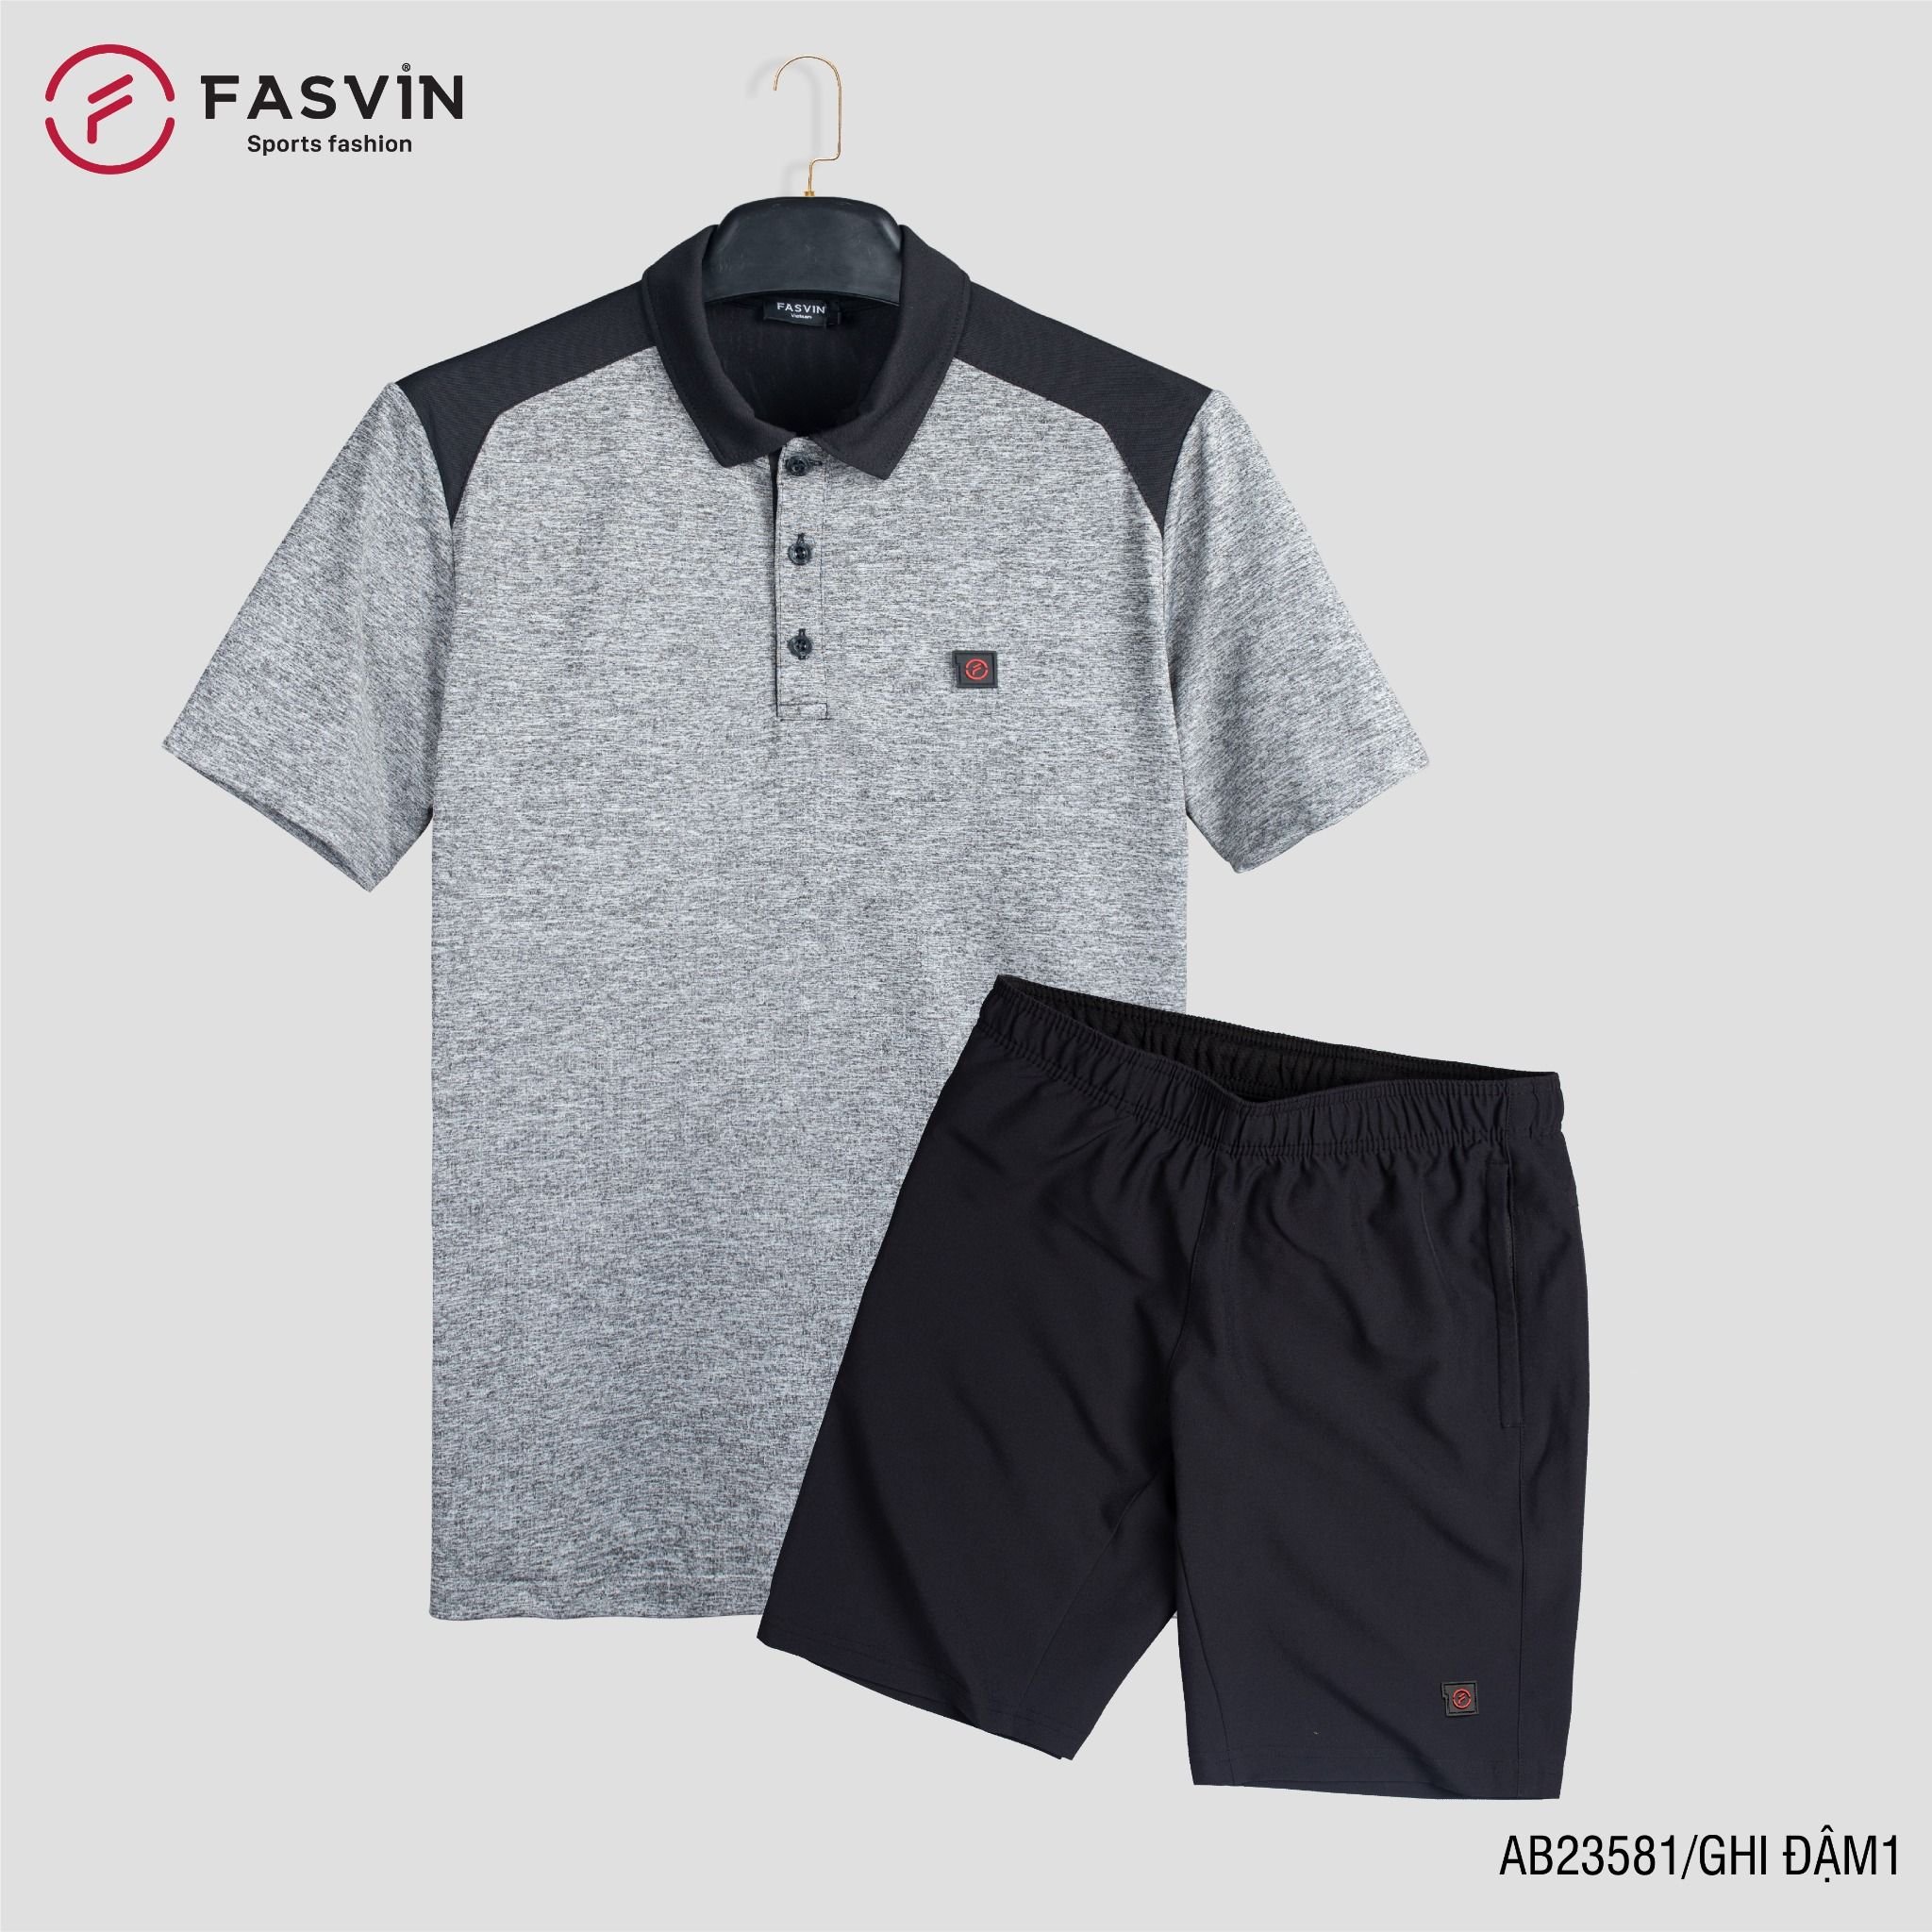  Bộ quần áo thể thao nam FASVIN AB23581 chất vải mềm nhẹ co giãn thoải mái 